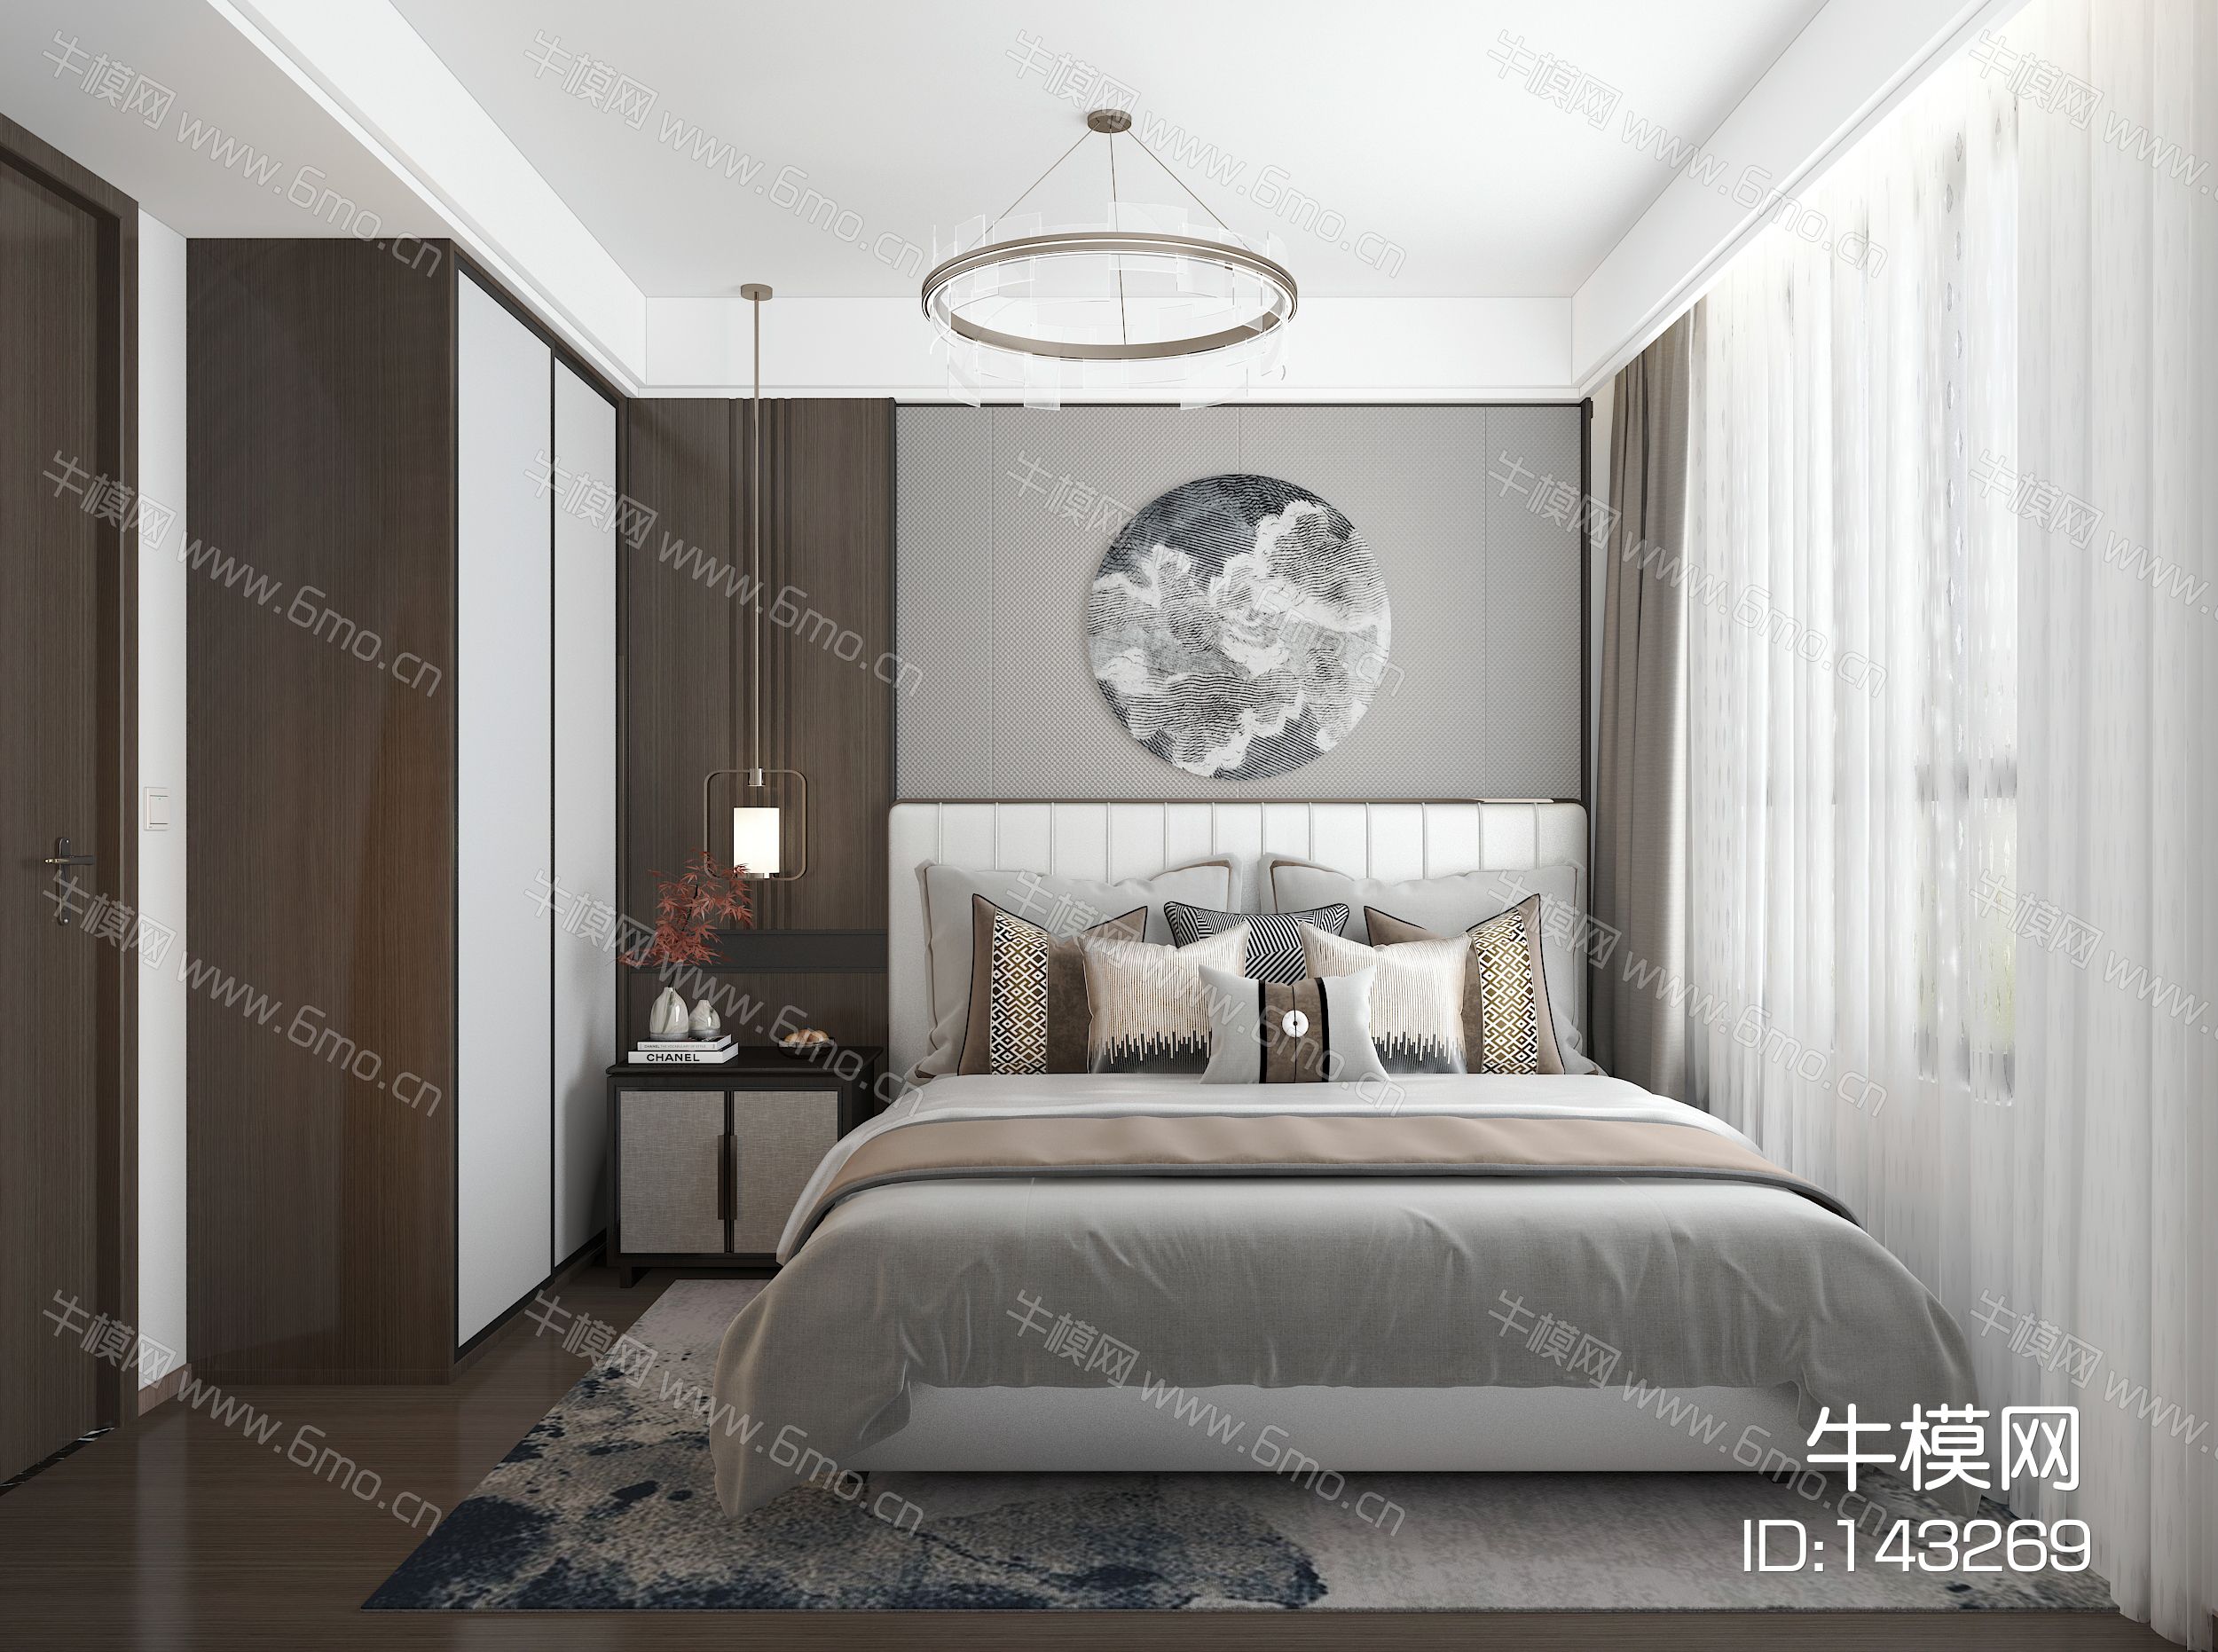 新中式家居卧室主卧老人房双人床衣柜床头柜吊灯壁挂地毯